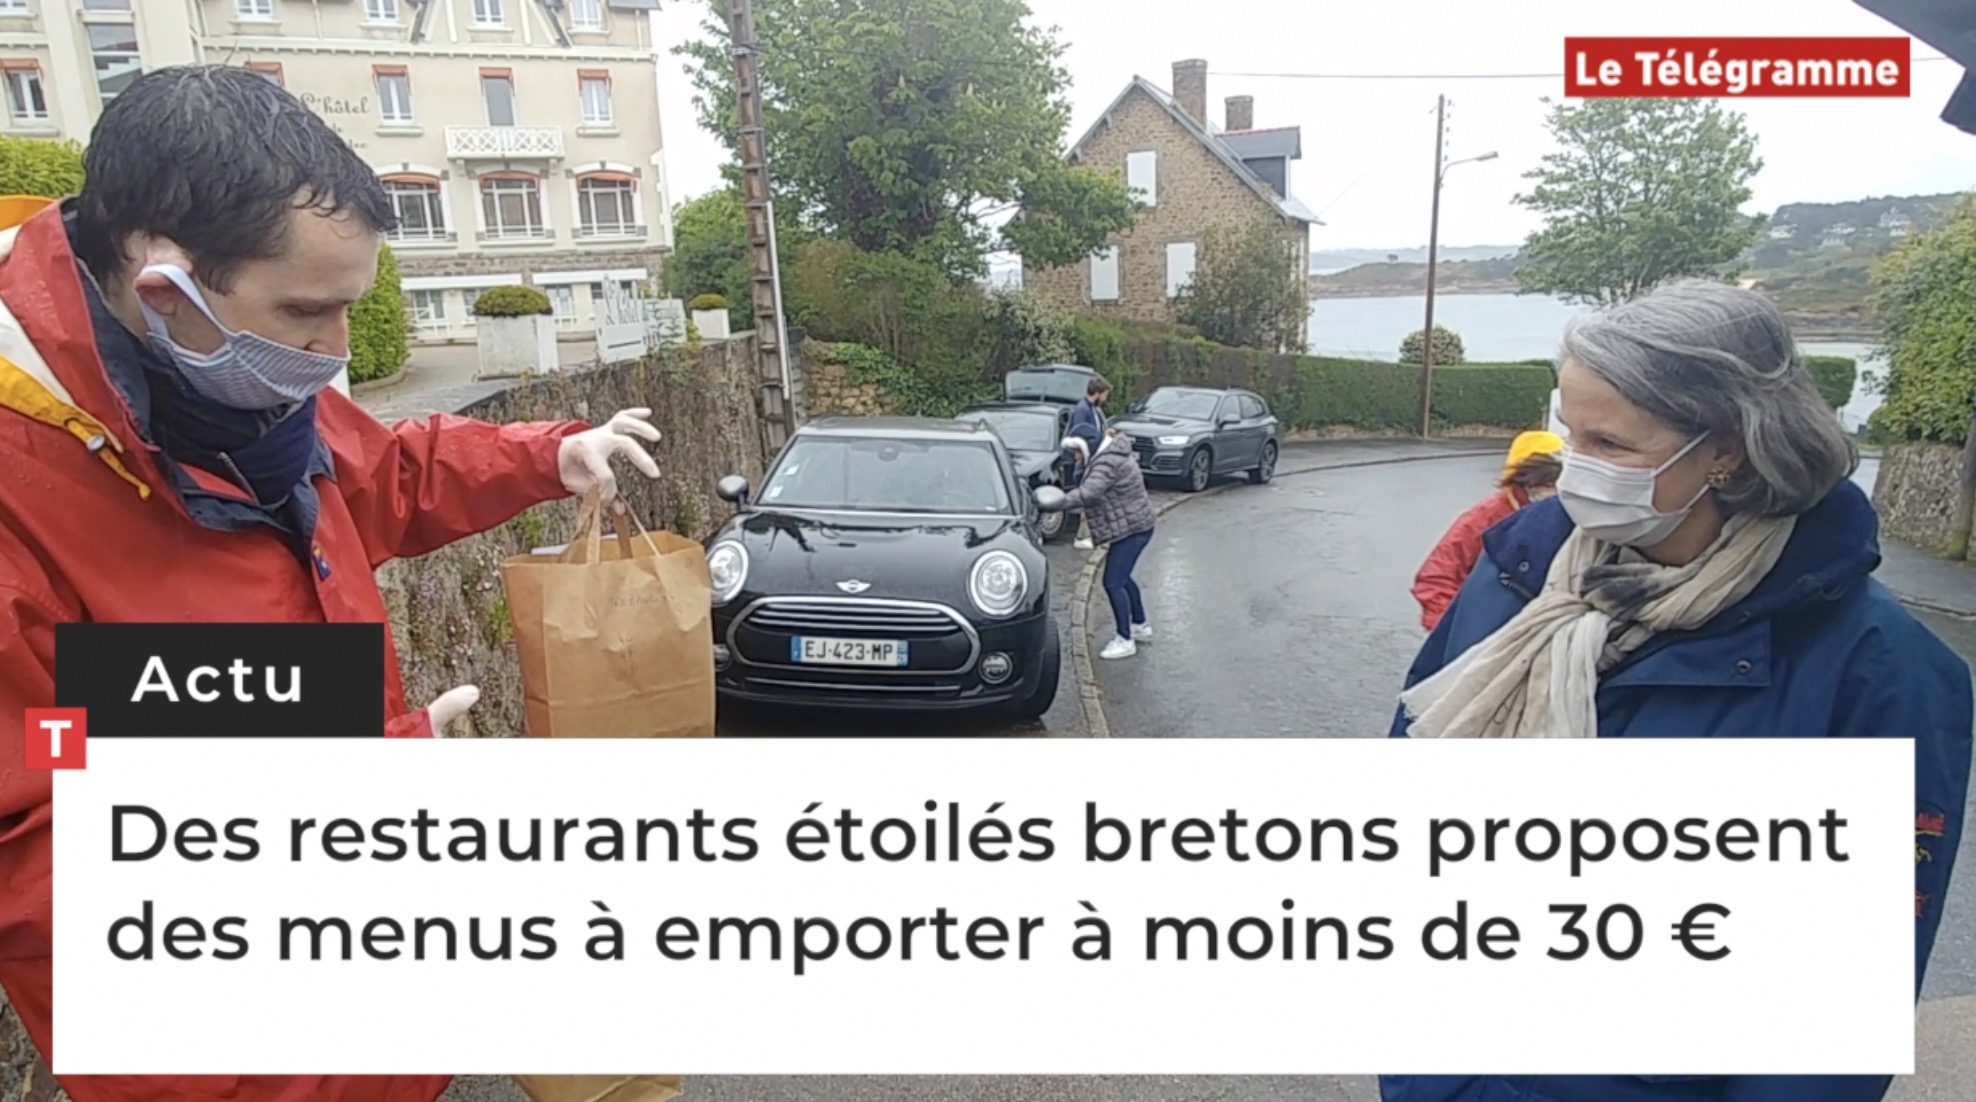 Des restaurants étoilés bretons proposent des menus à emporter à moins de 30 € (Le Télégramme)